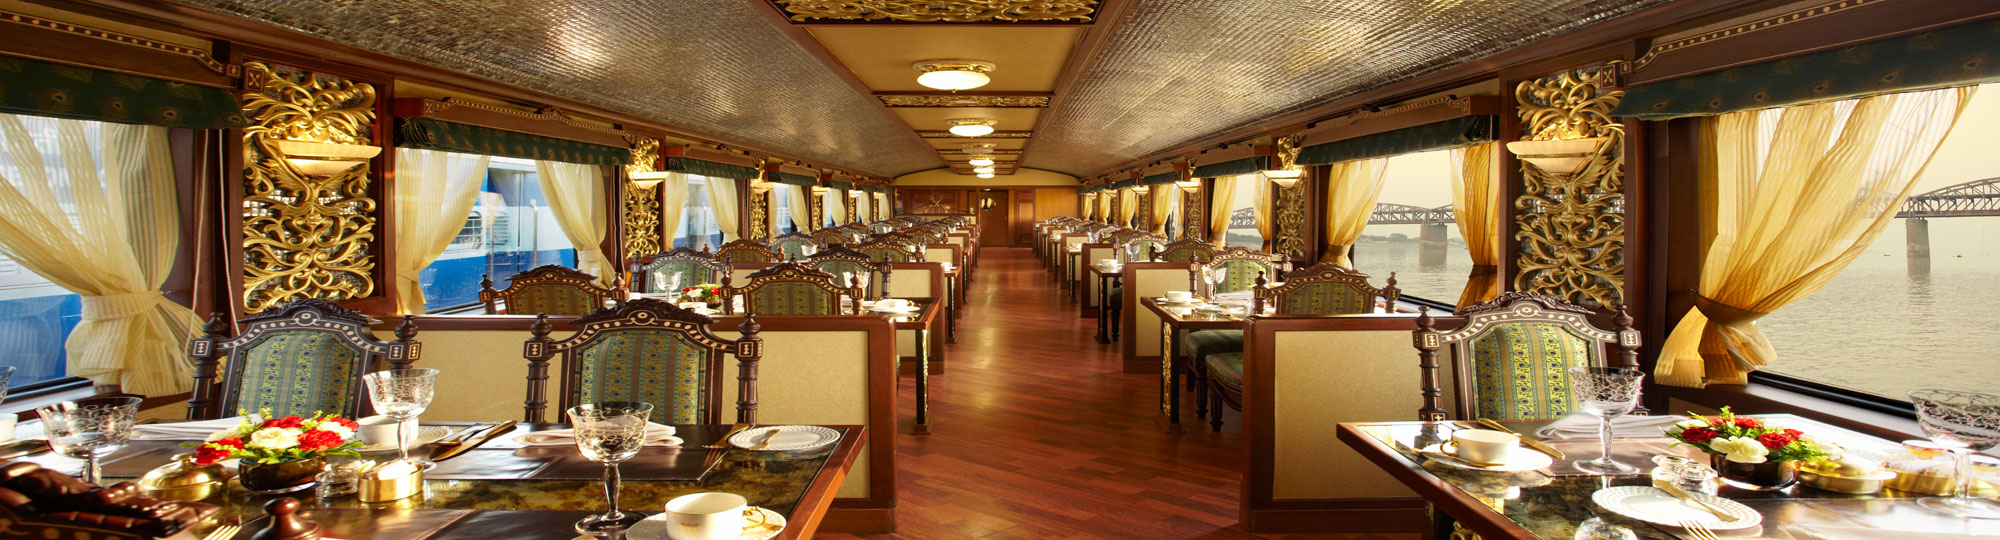 Mayur Mahal Restaurant